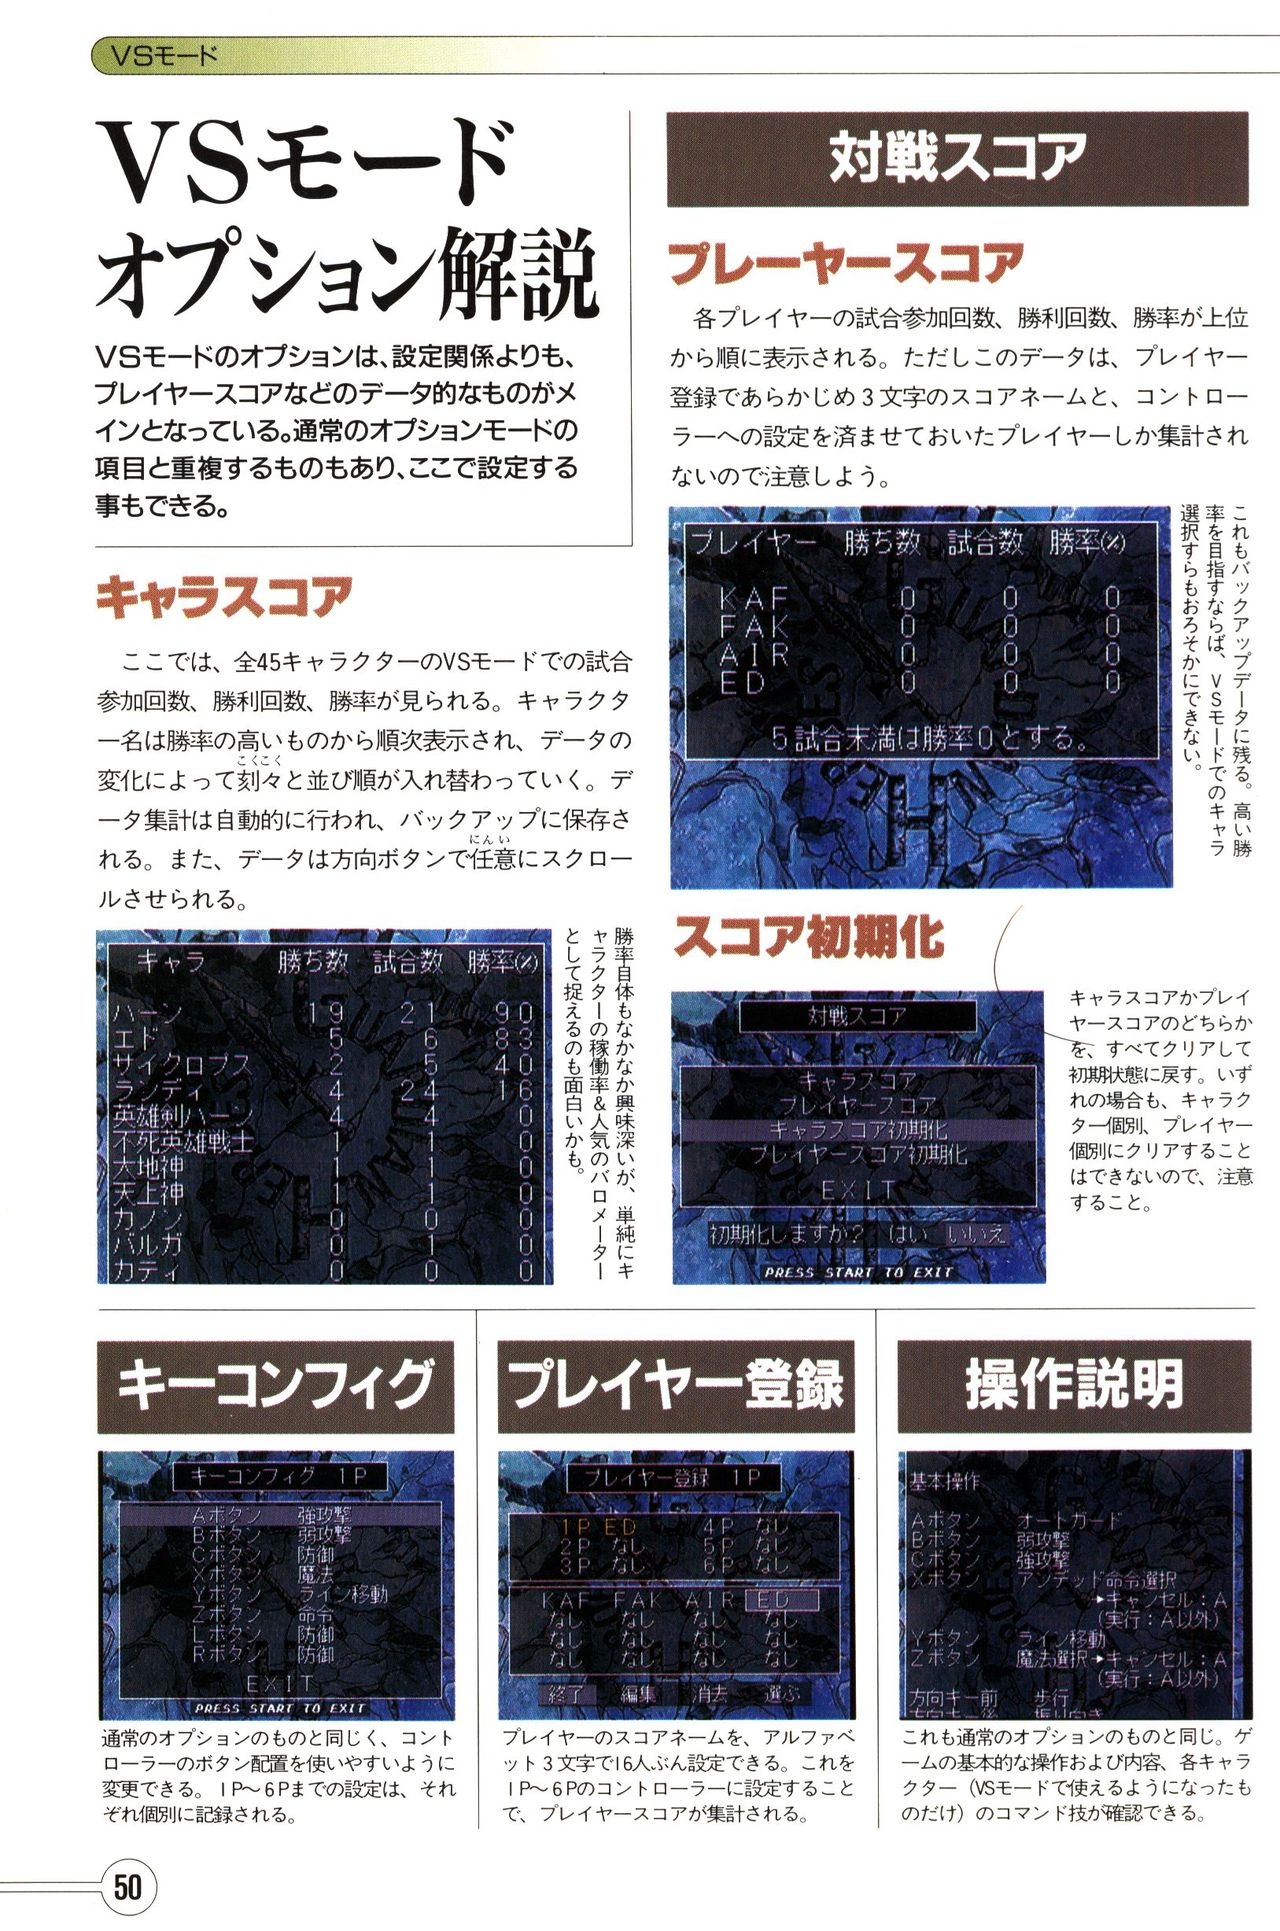 Guardian Heroes Perfect Guide (Sega Saturn magazine books) 52